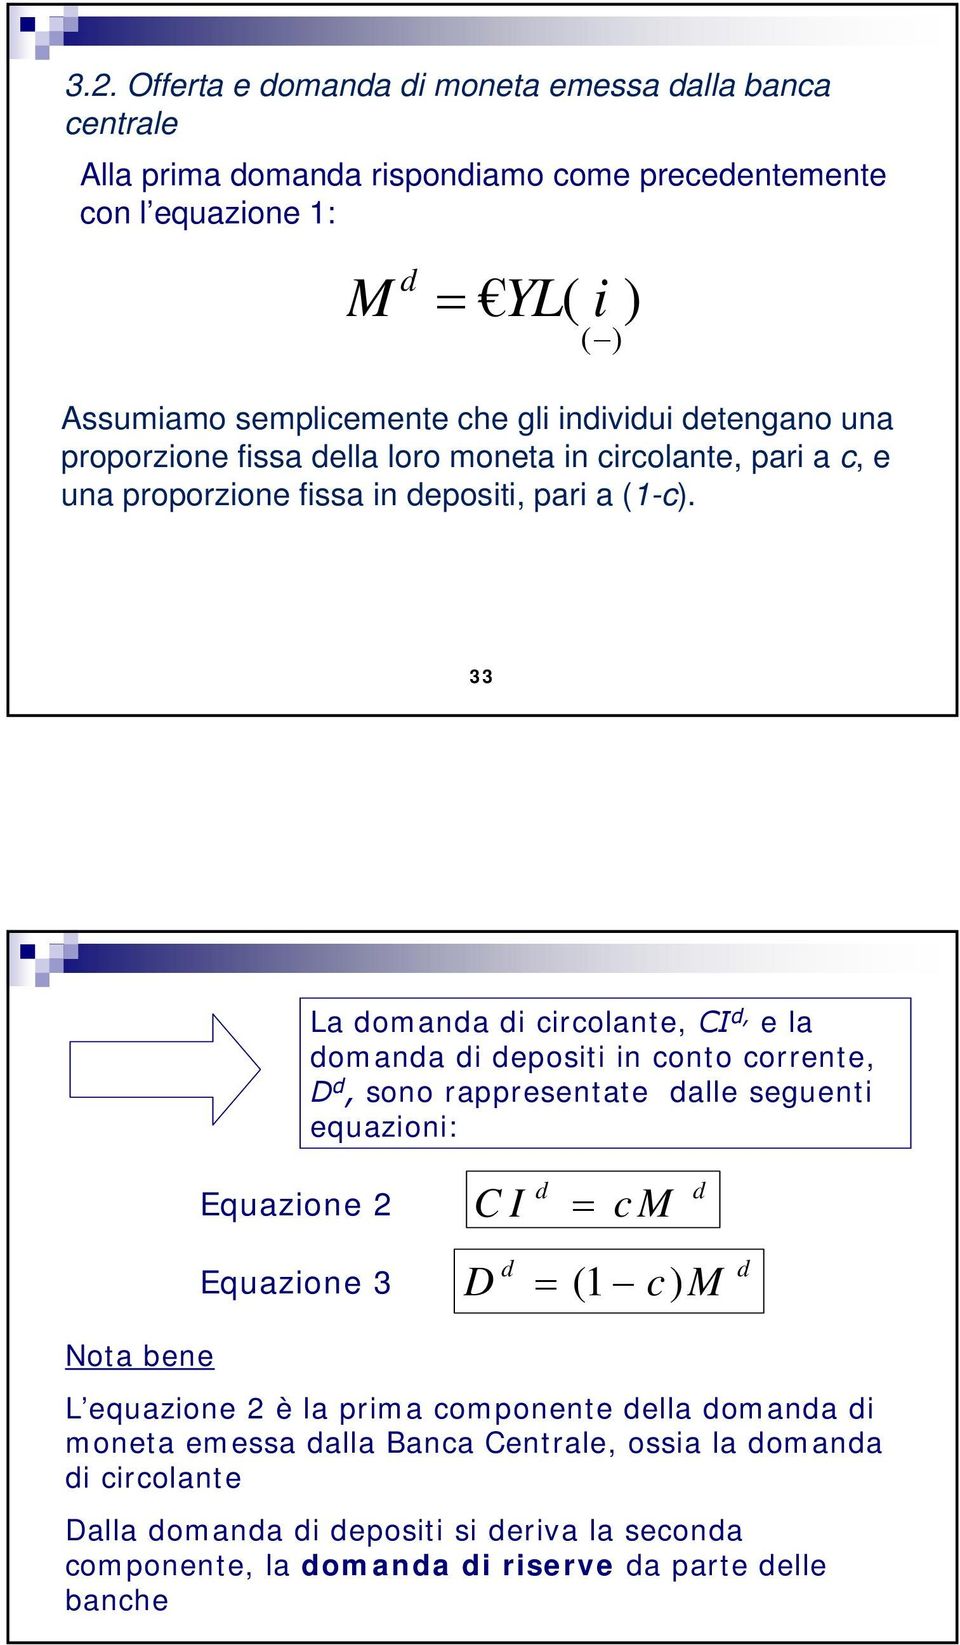 33 La domanda di circolante, CI d, e la domanda di depositi in conto corrente, D d, sono rappresentate dalle seguenti equazioni: Equazione 2 CI d = cm d Equazione 3 D d = (1 c) M d